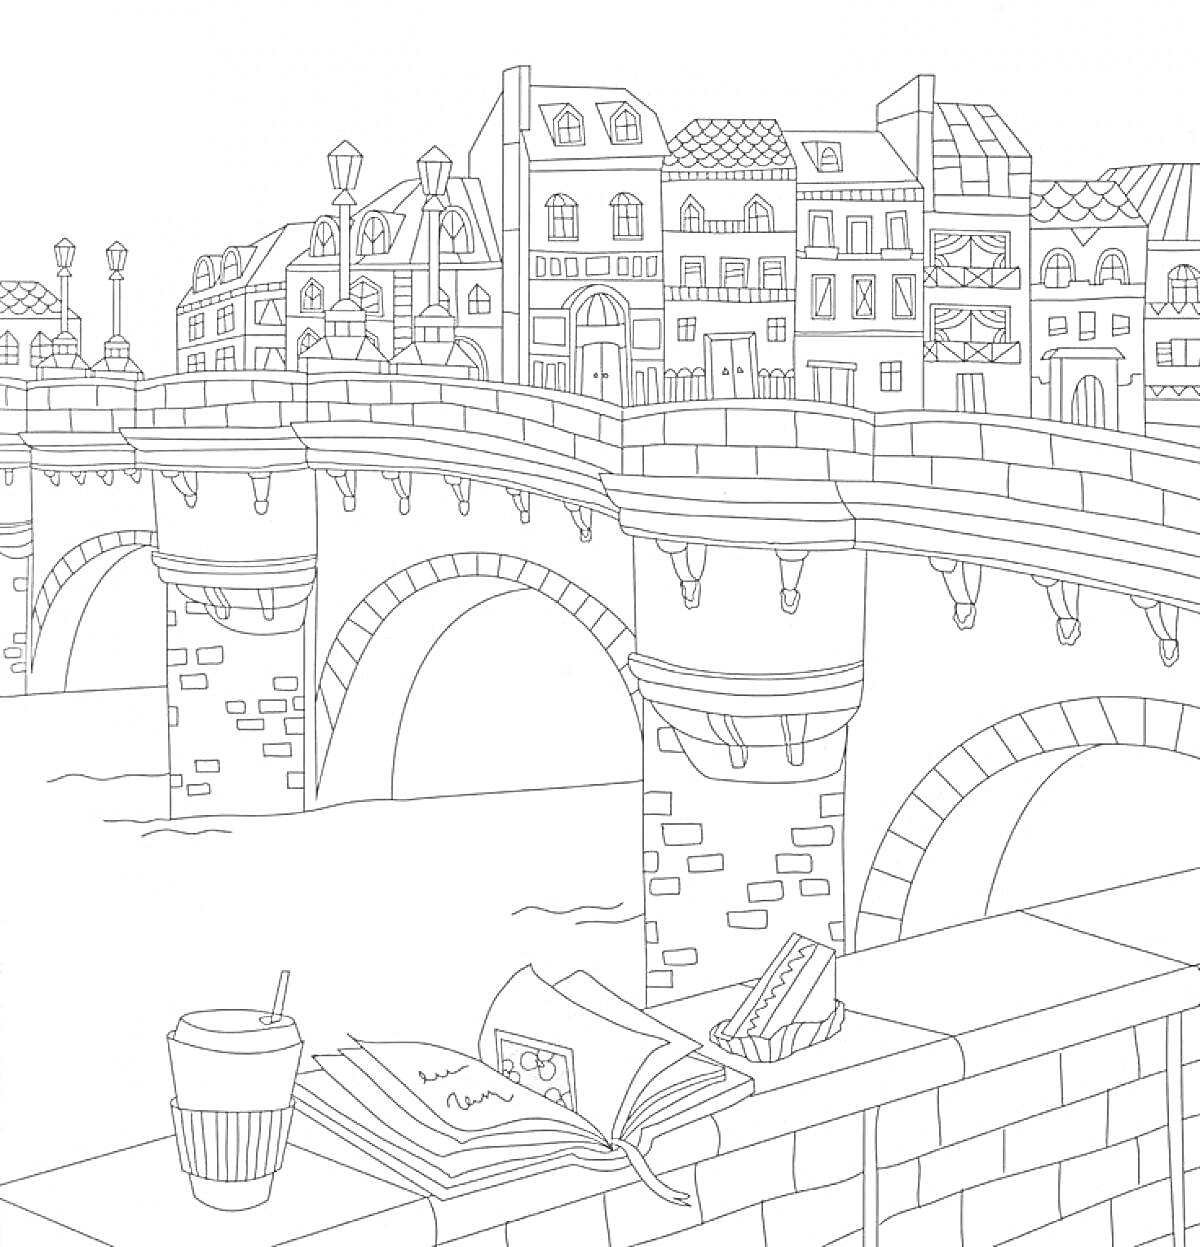 Старый мост во Франции с книгой, кофе и сендвичем на парапете